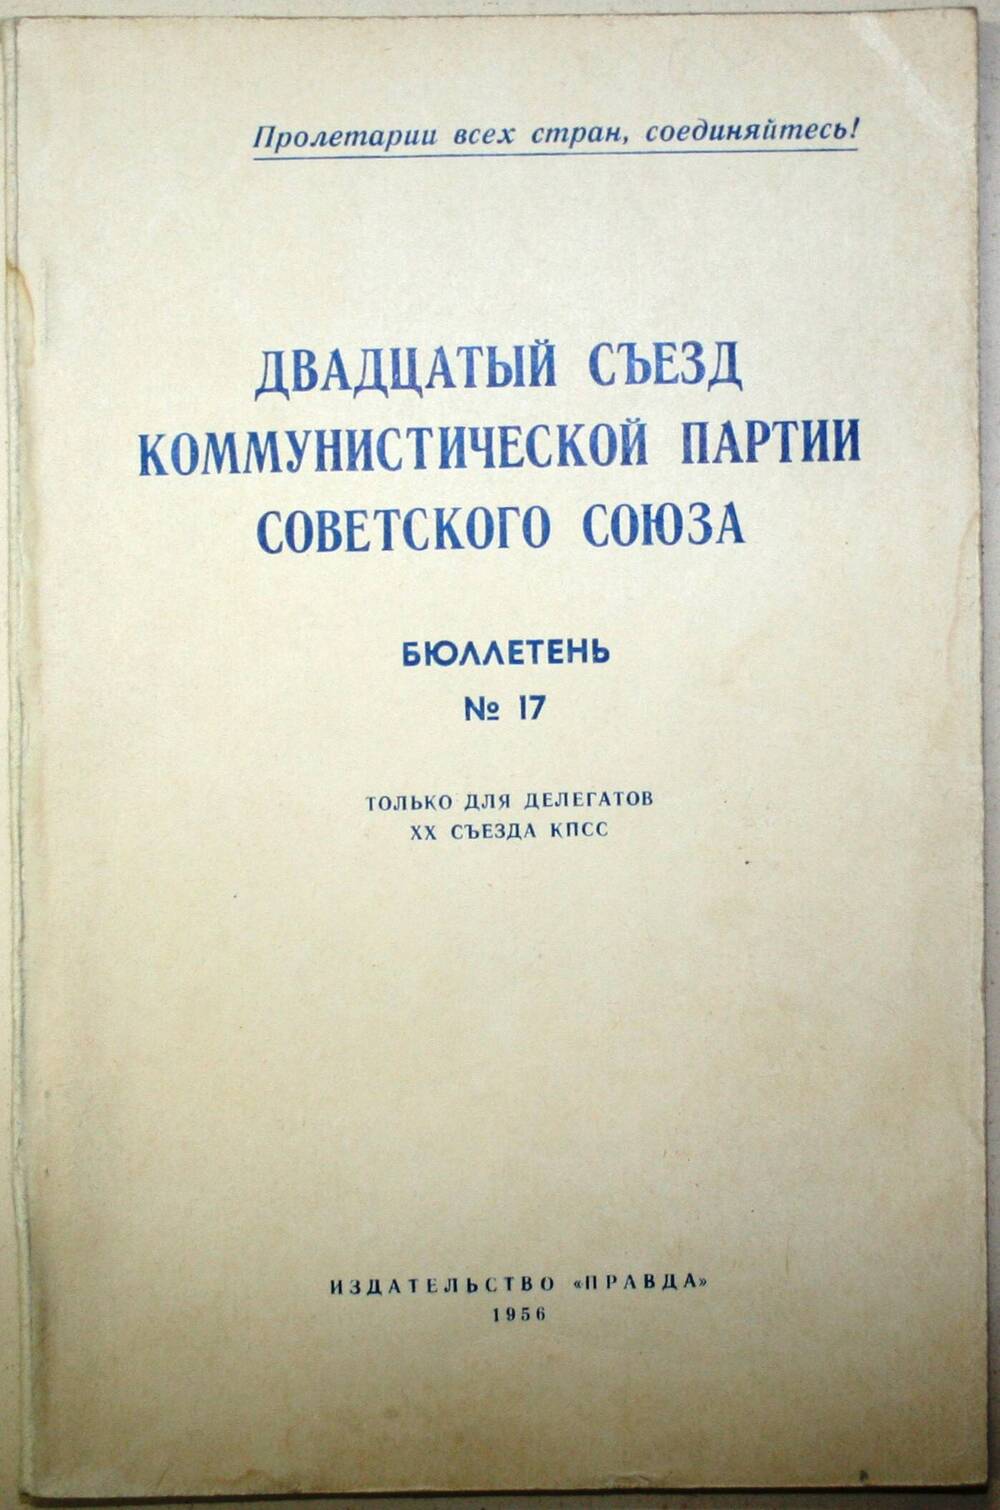 Бюллетень №17. Двадцатый съезд коммунистической партии Советского Союза.